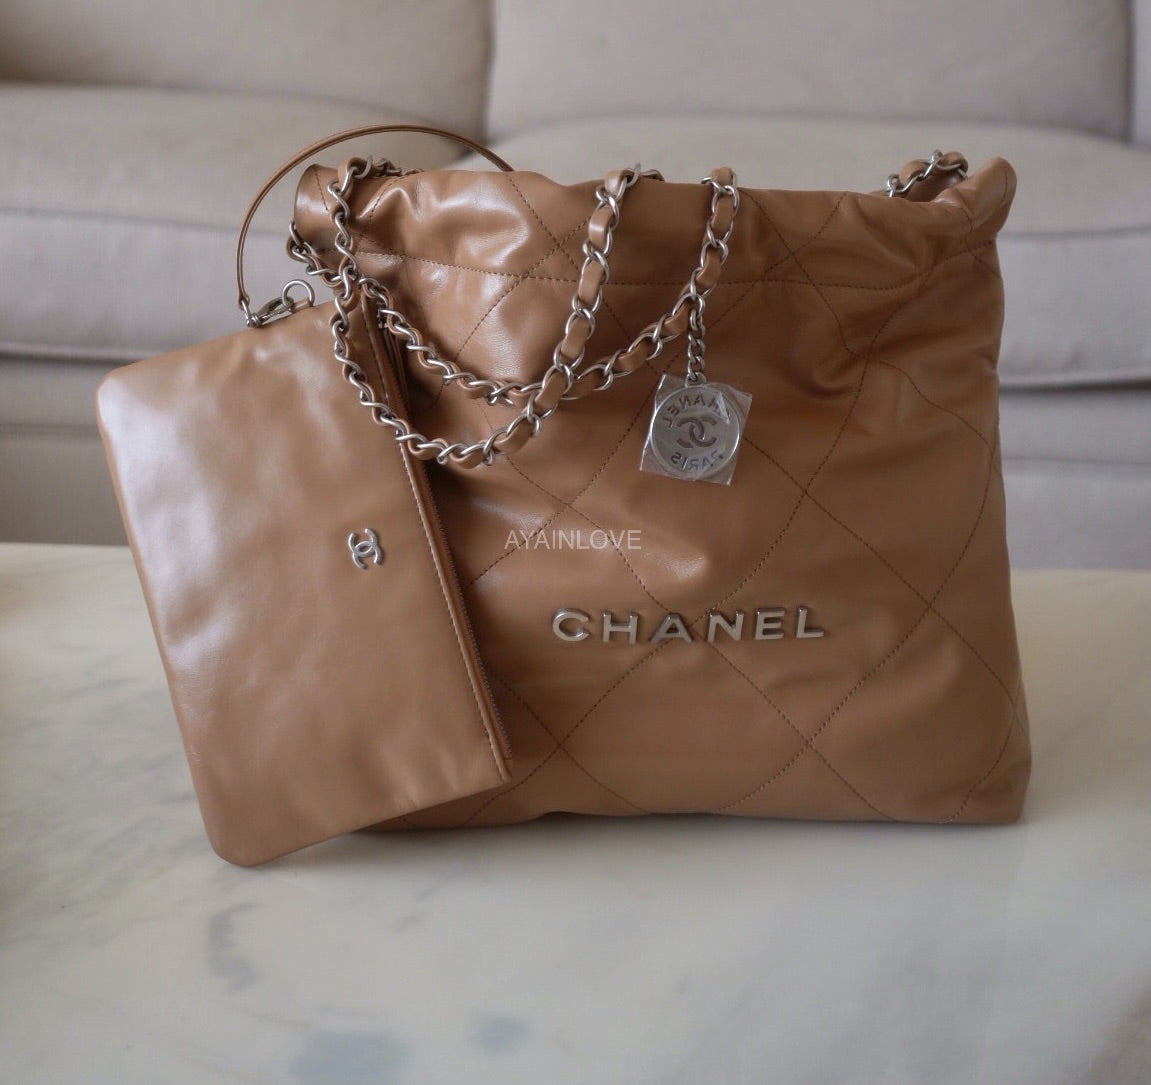 Chanel 22 mini : r/handbags